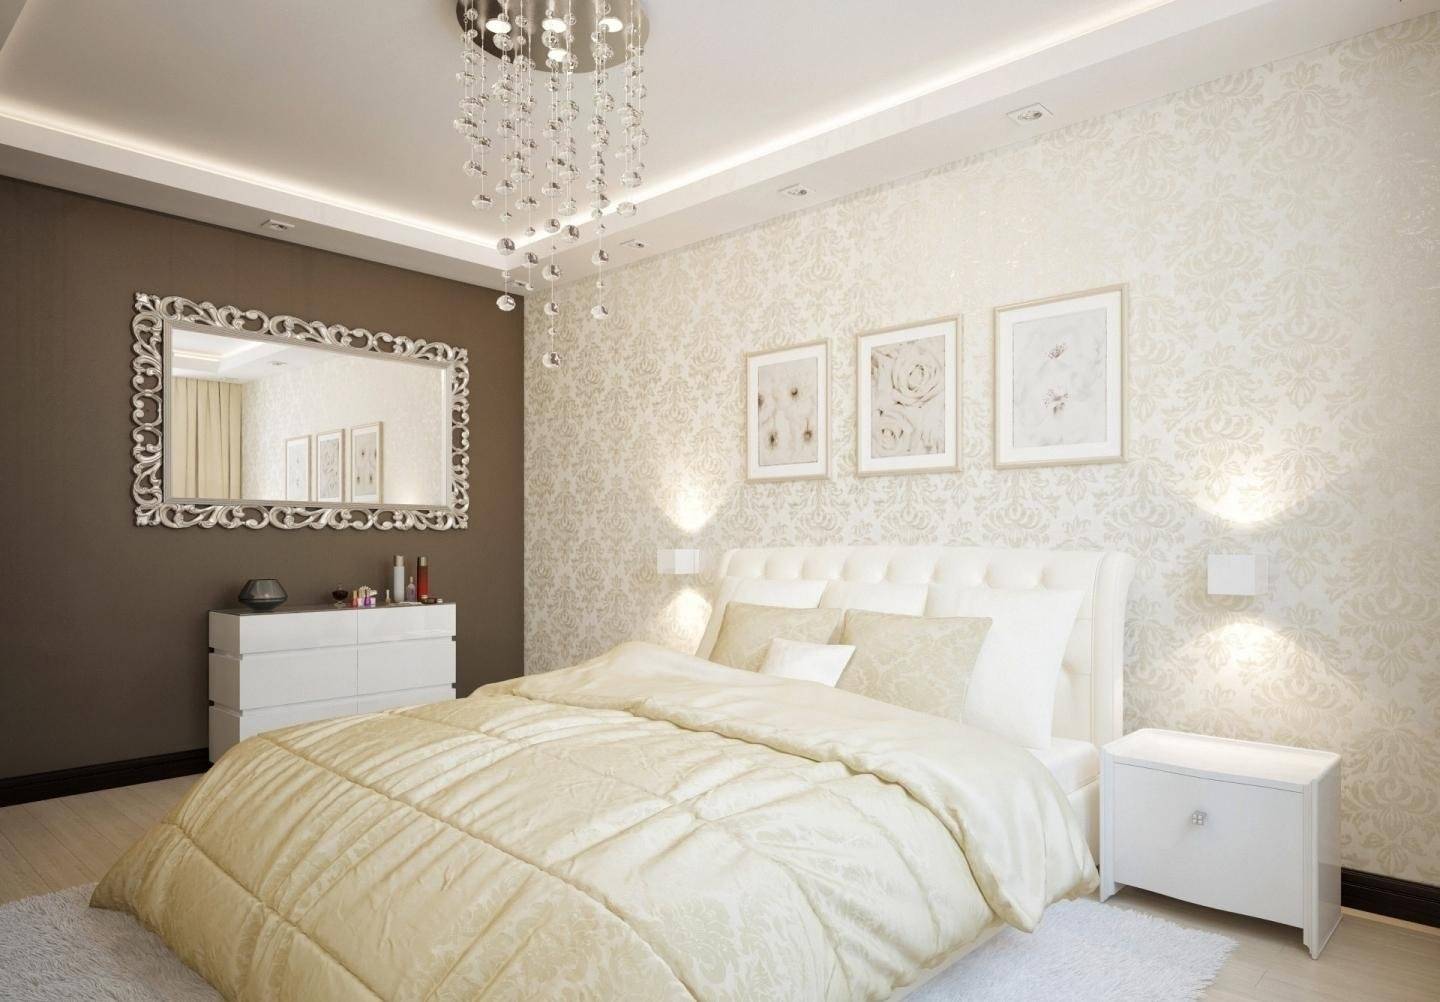 Красиво и стильно: оформление спальни в коричнево-бежевых тонах (+91 фото)